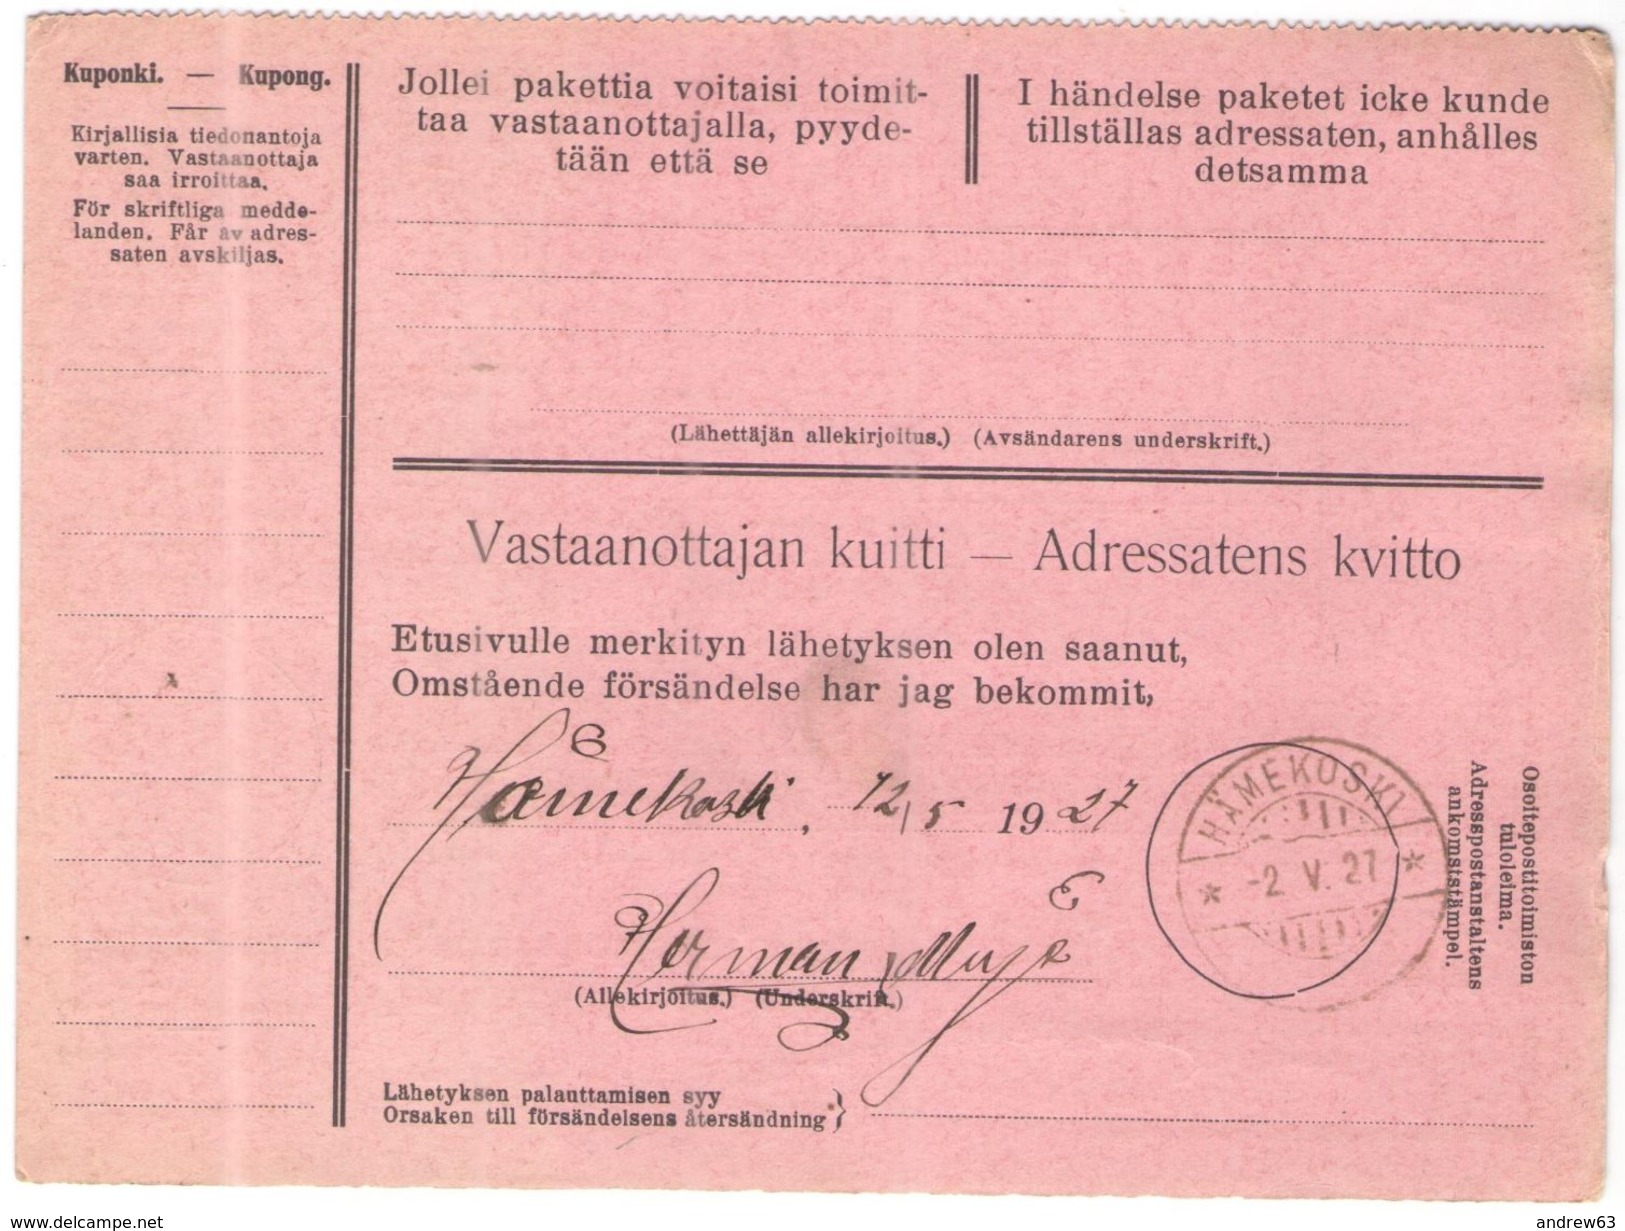 FINLANDIA - Finland - 1927 - Postiennakko-Osoitekortti - Adresskort Paket Packet Freight Bill Card - Viaggiata Da Helsin - Parcel Post